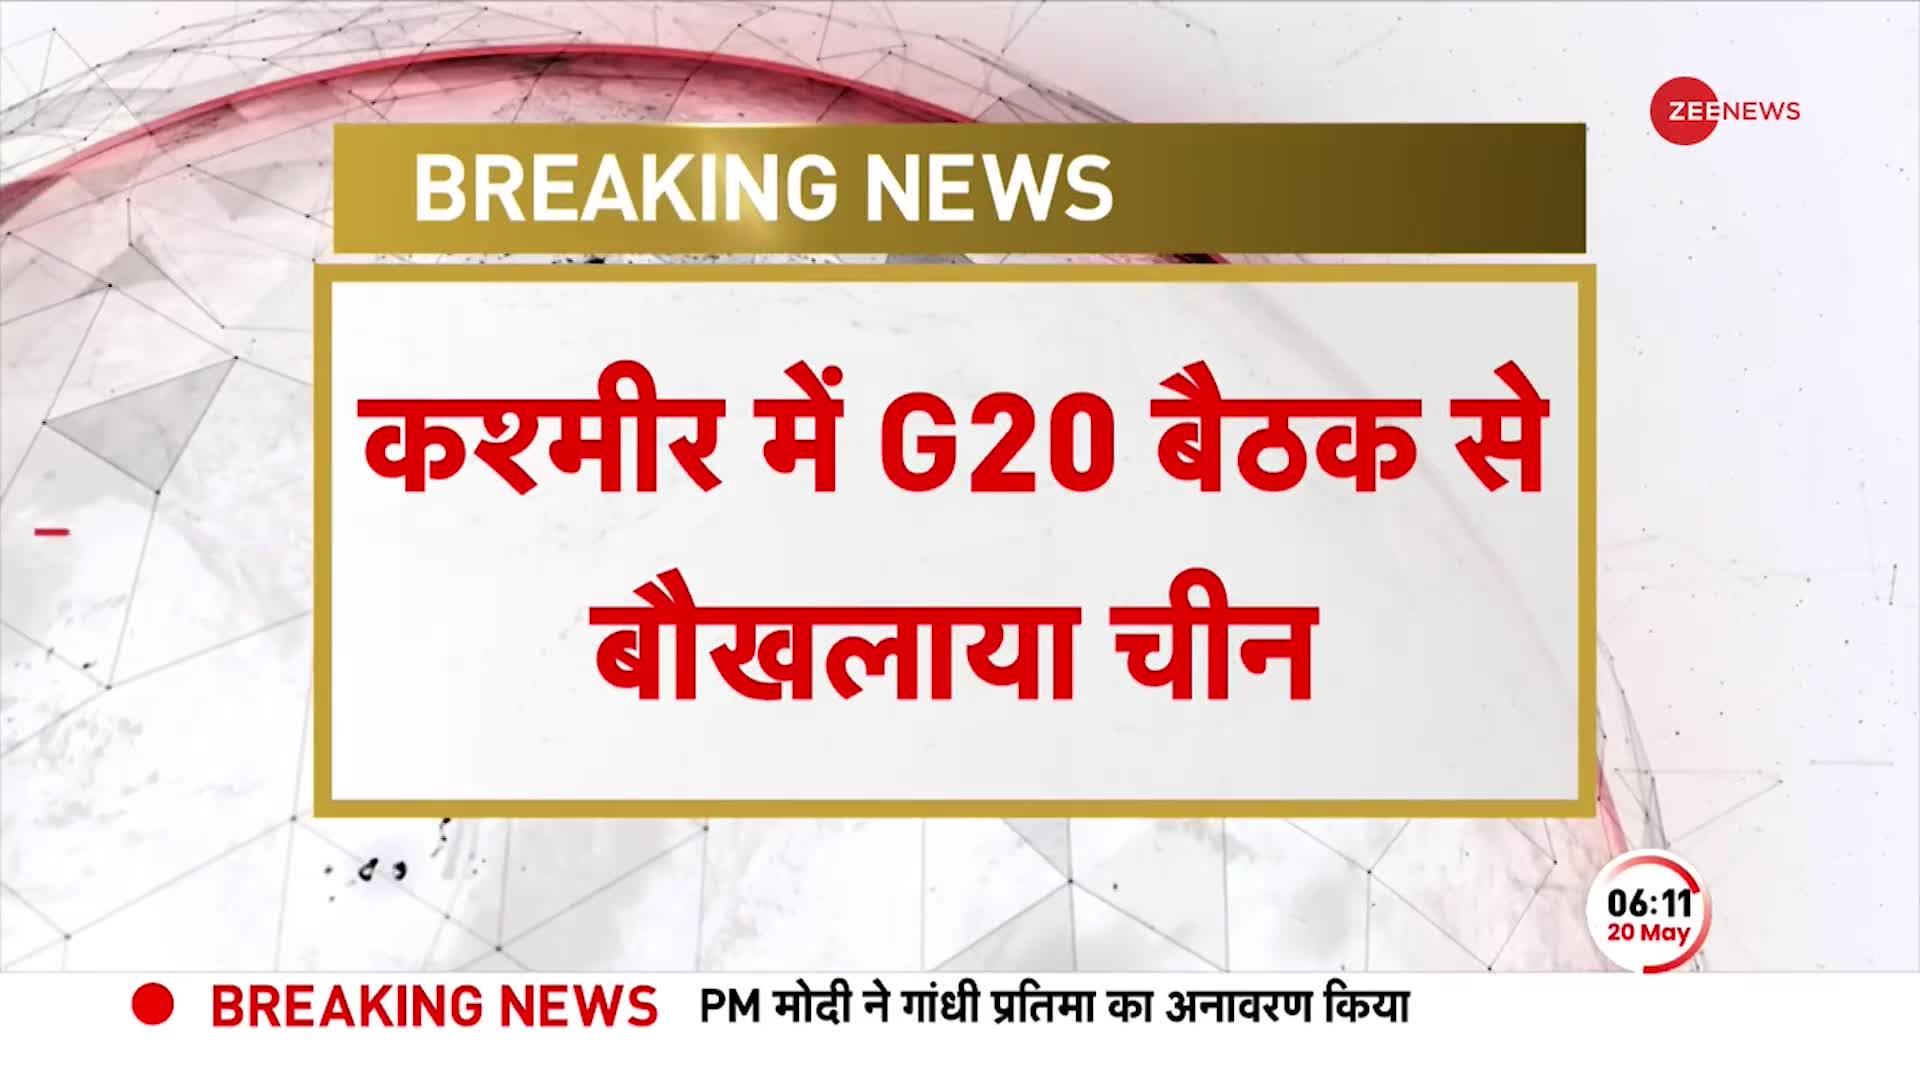 कश्मीर में G20 बैठक से बौखलाया चीन, G20 समिट का बायकॉट करने का ऐलान